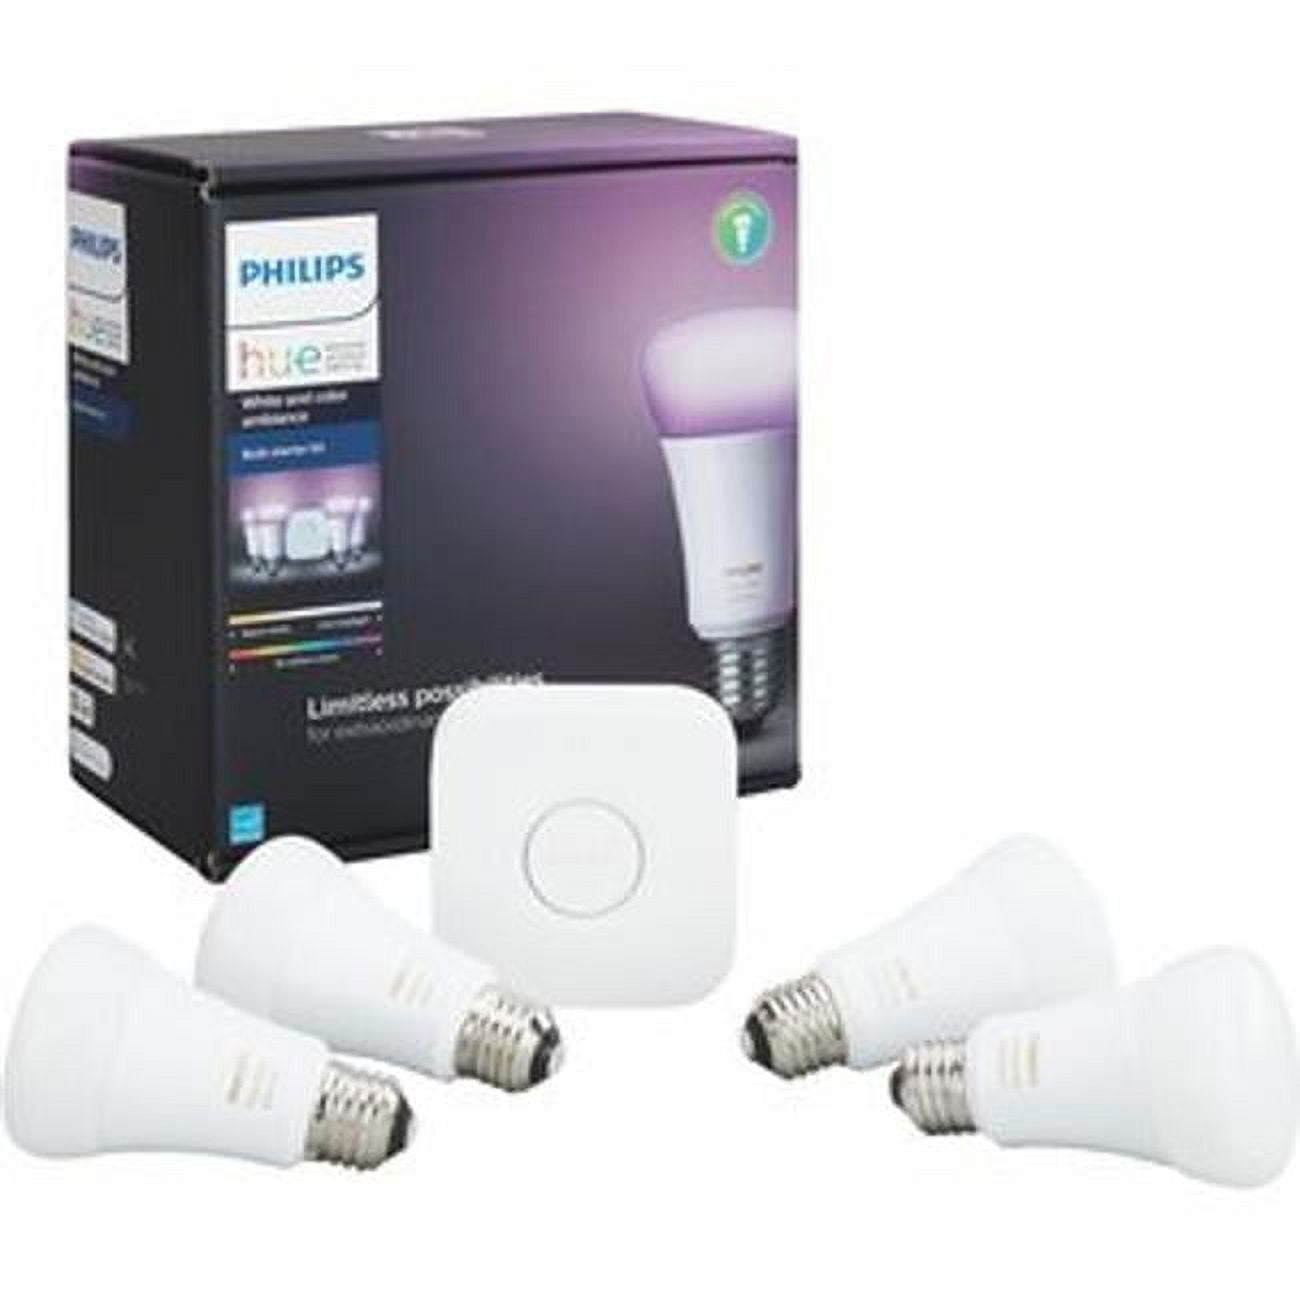 3000786 10 Watt & 800 Lumen A19 Hue A-line Led Smart Bulb Starter Kit - Soft White, Pack Of 4